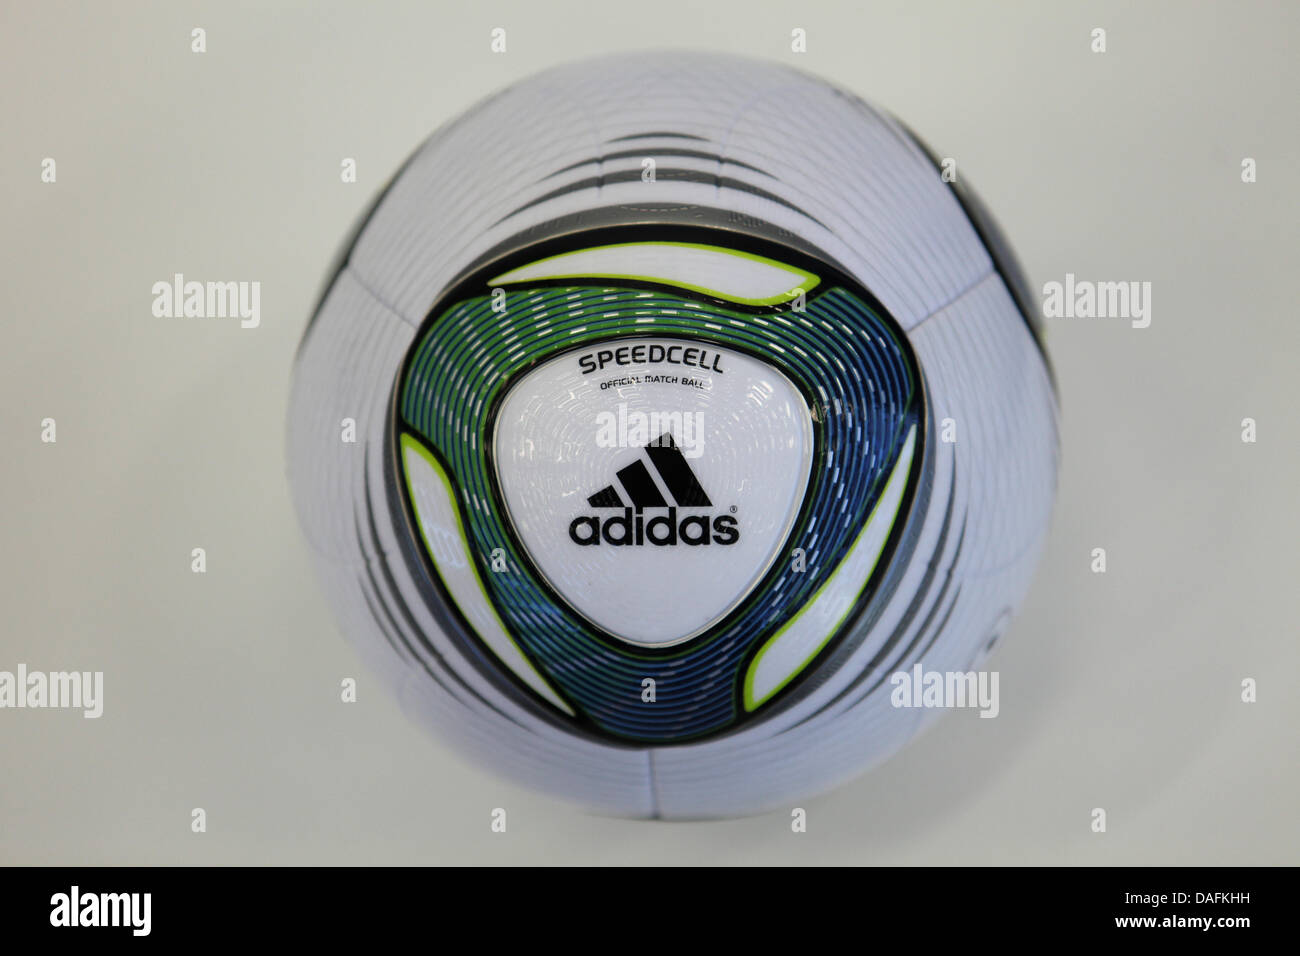 El balón oficial de la Copa Mundial Femenina de la FIFA, llamado Speedcell  de adidas, que se presenta en Herzogenaurach, Alemania, 2 de marzo de 2011.  Foto: Daniel Karmann Fotografía de stock - Alamy